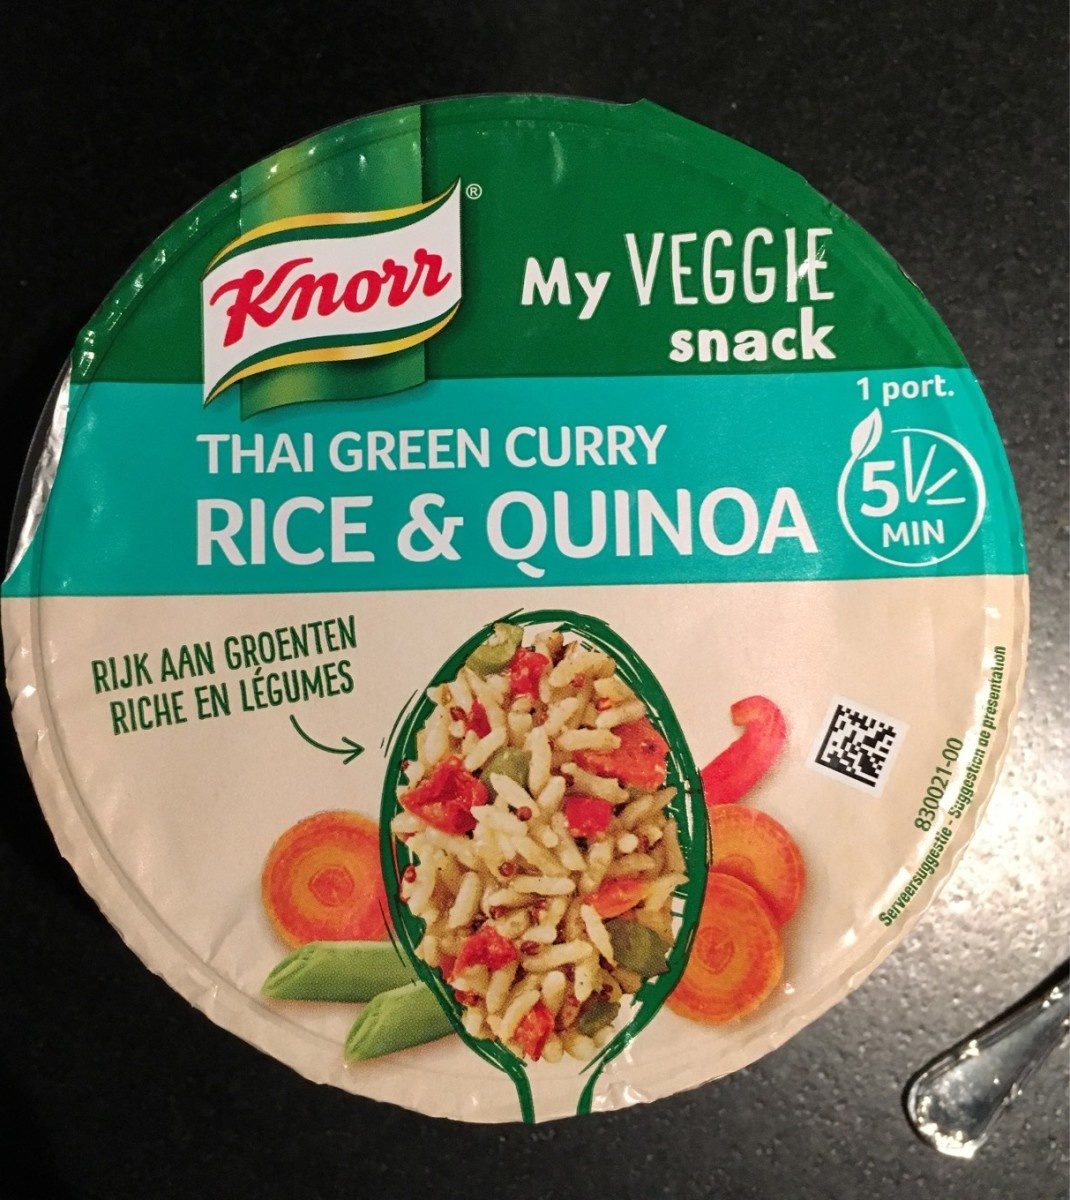 Veggie snack riz et quinoa - Product - fr